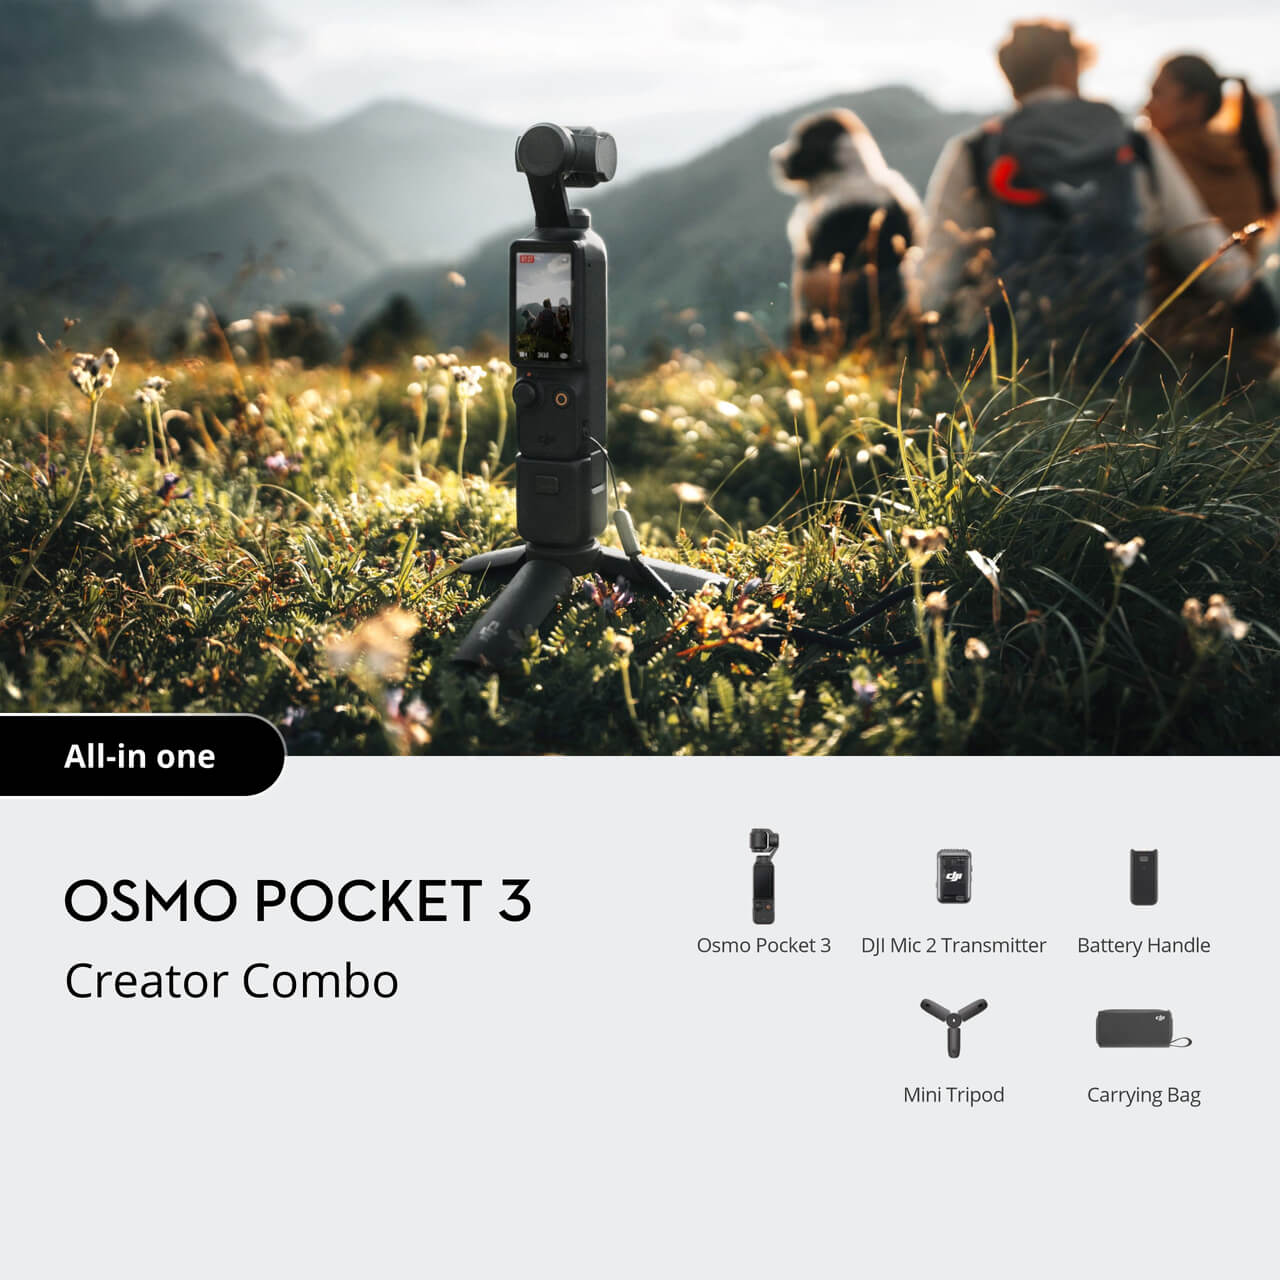 Buy Osmo Pocket 3 - DJI Store